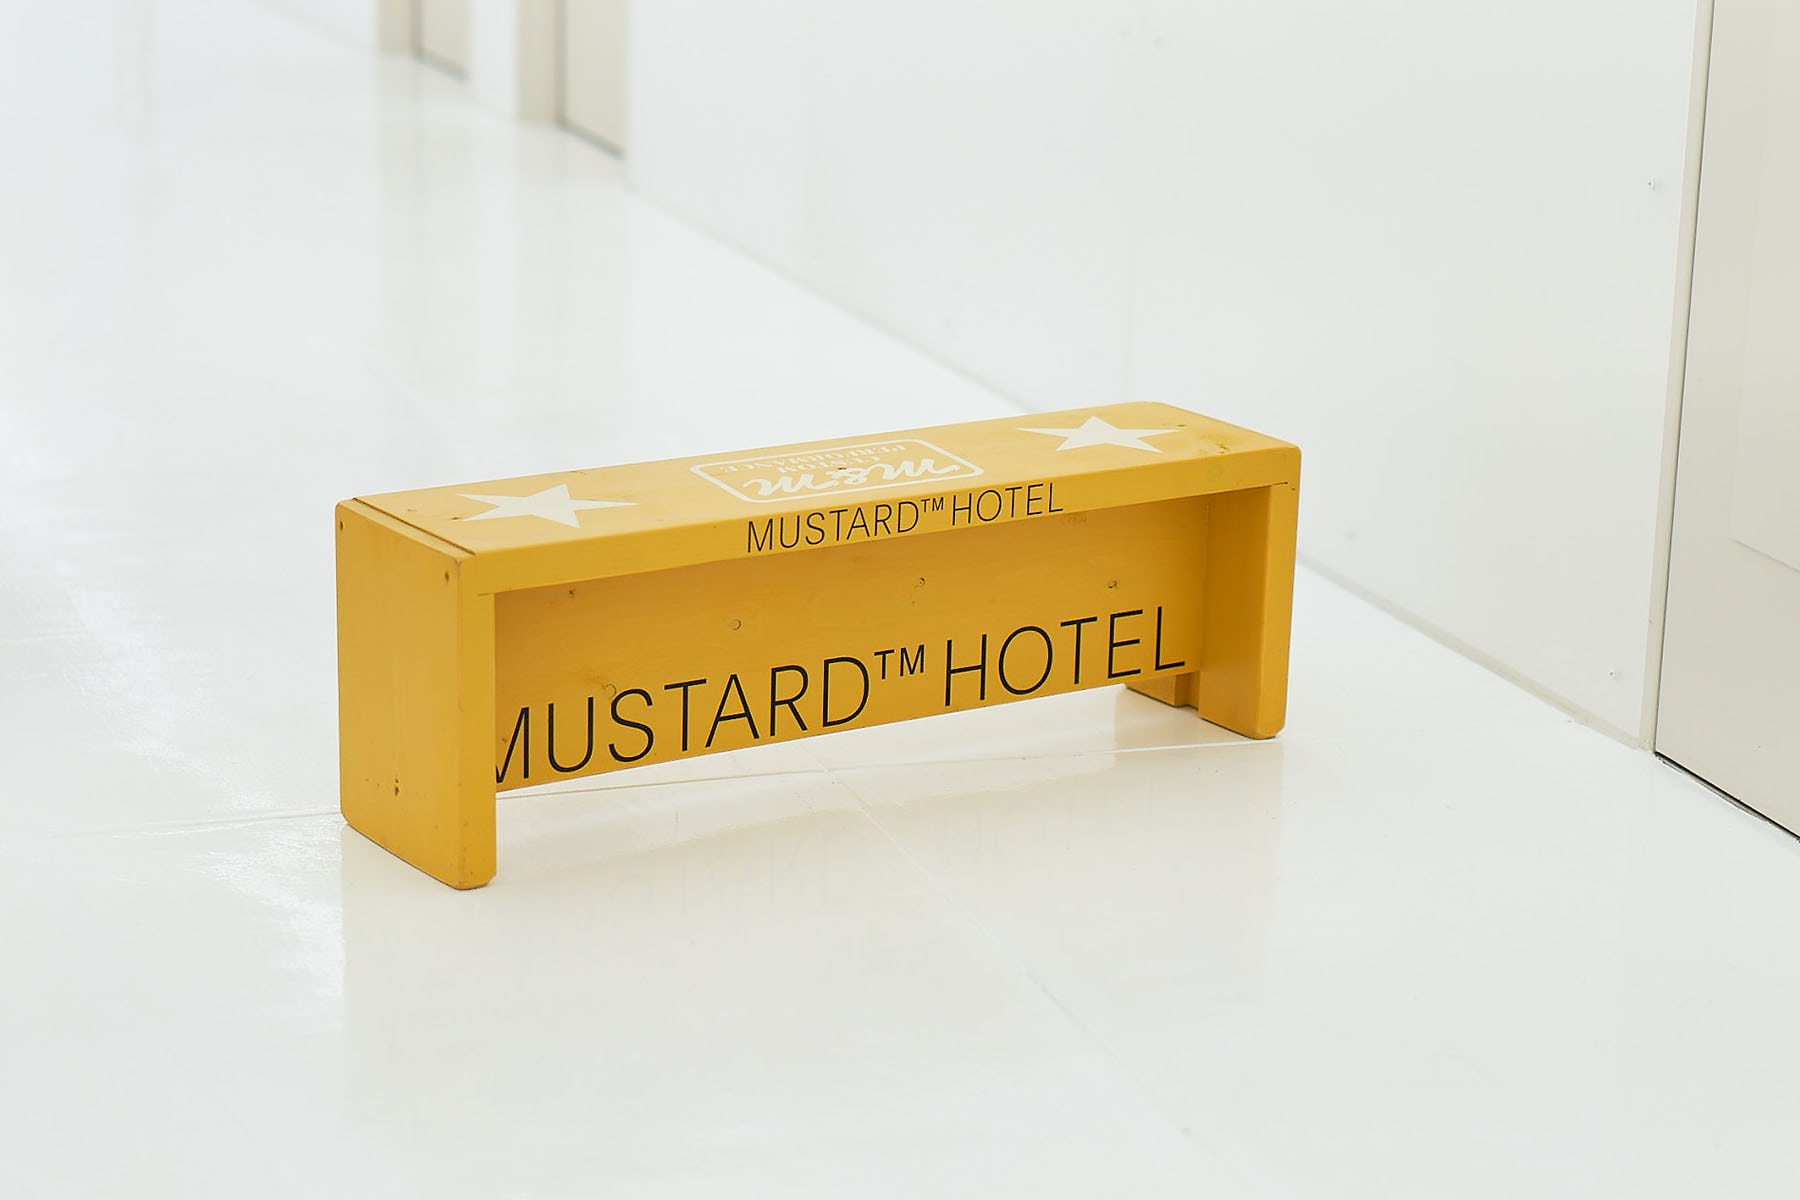 マスタード ホテル シブヤ エム アンド エム MUSTARD™ HOTEL SHIBUYA が伝説的内装クリエーター集団 M&M とのコラボプロダクトをリリース